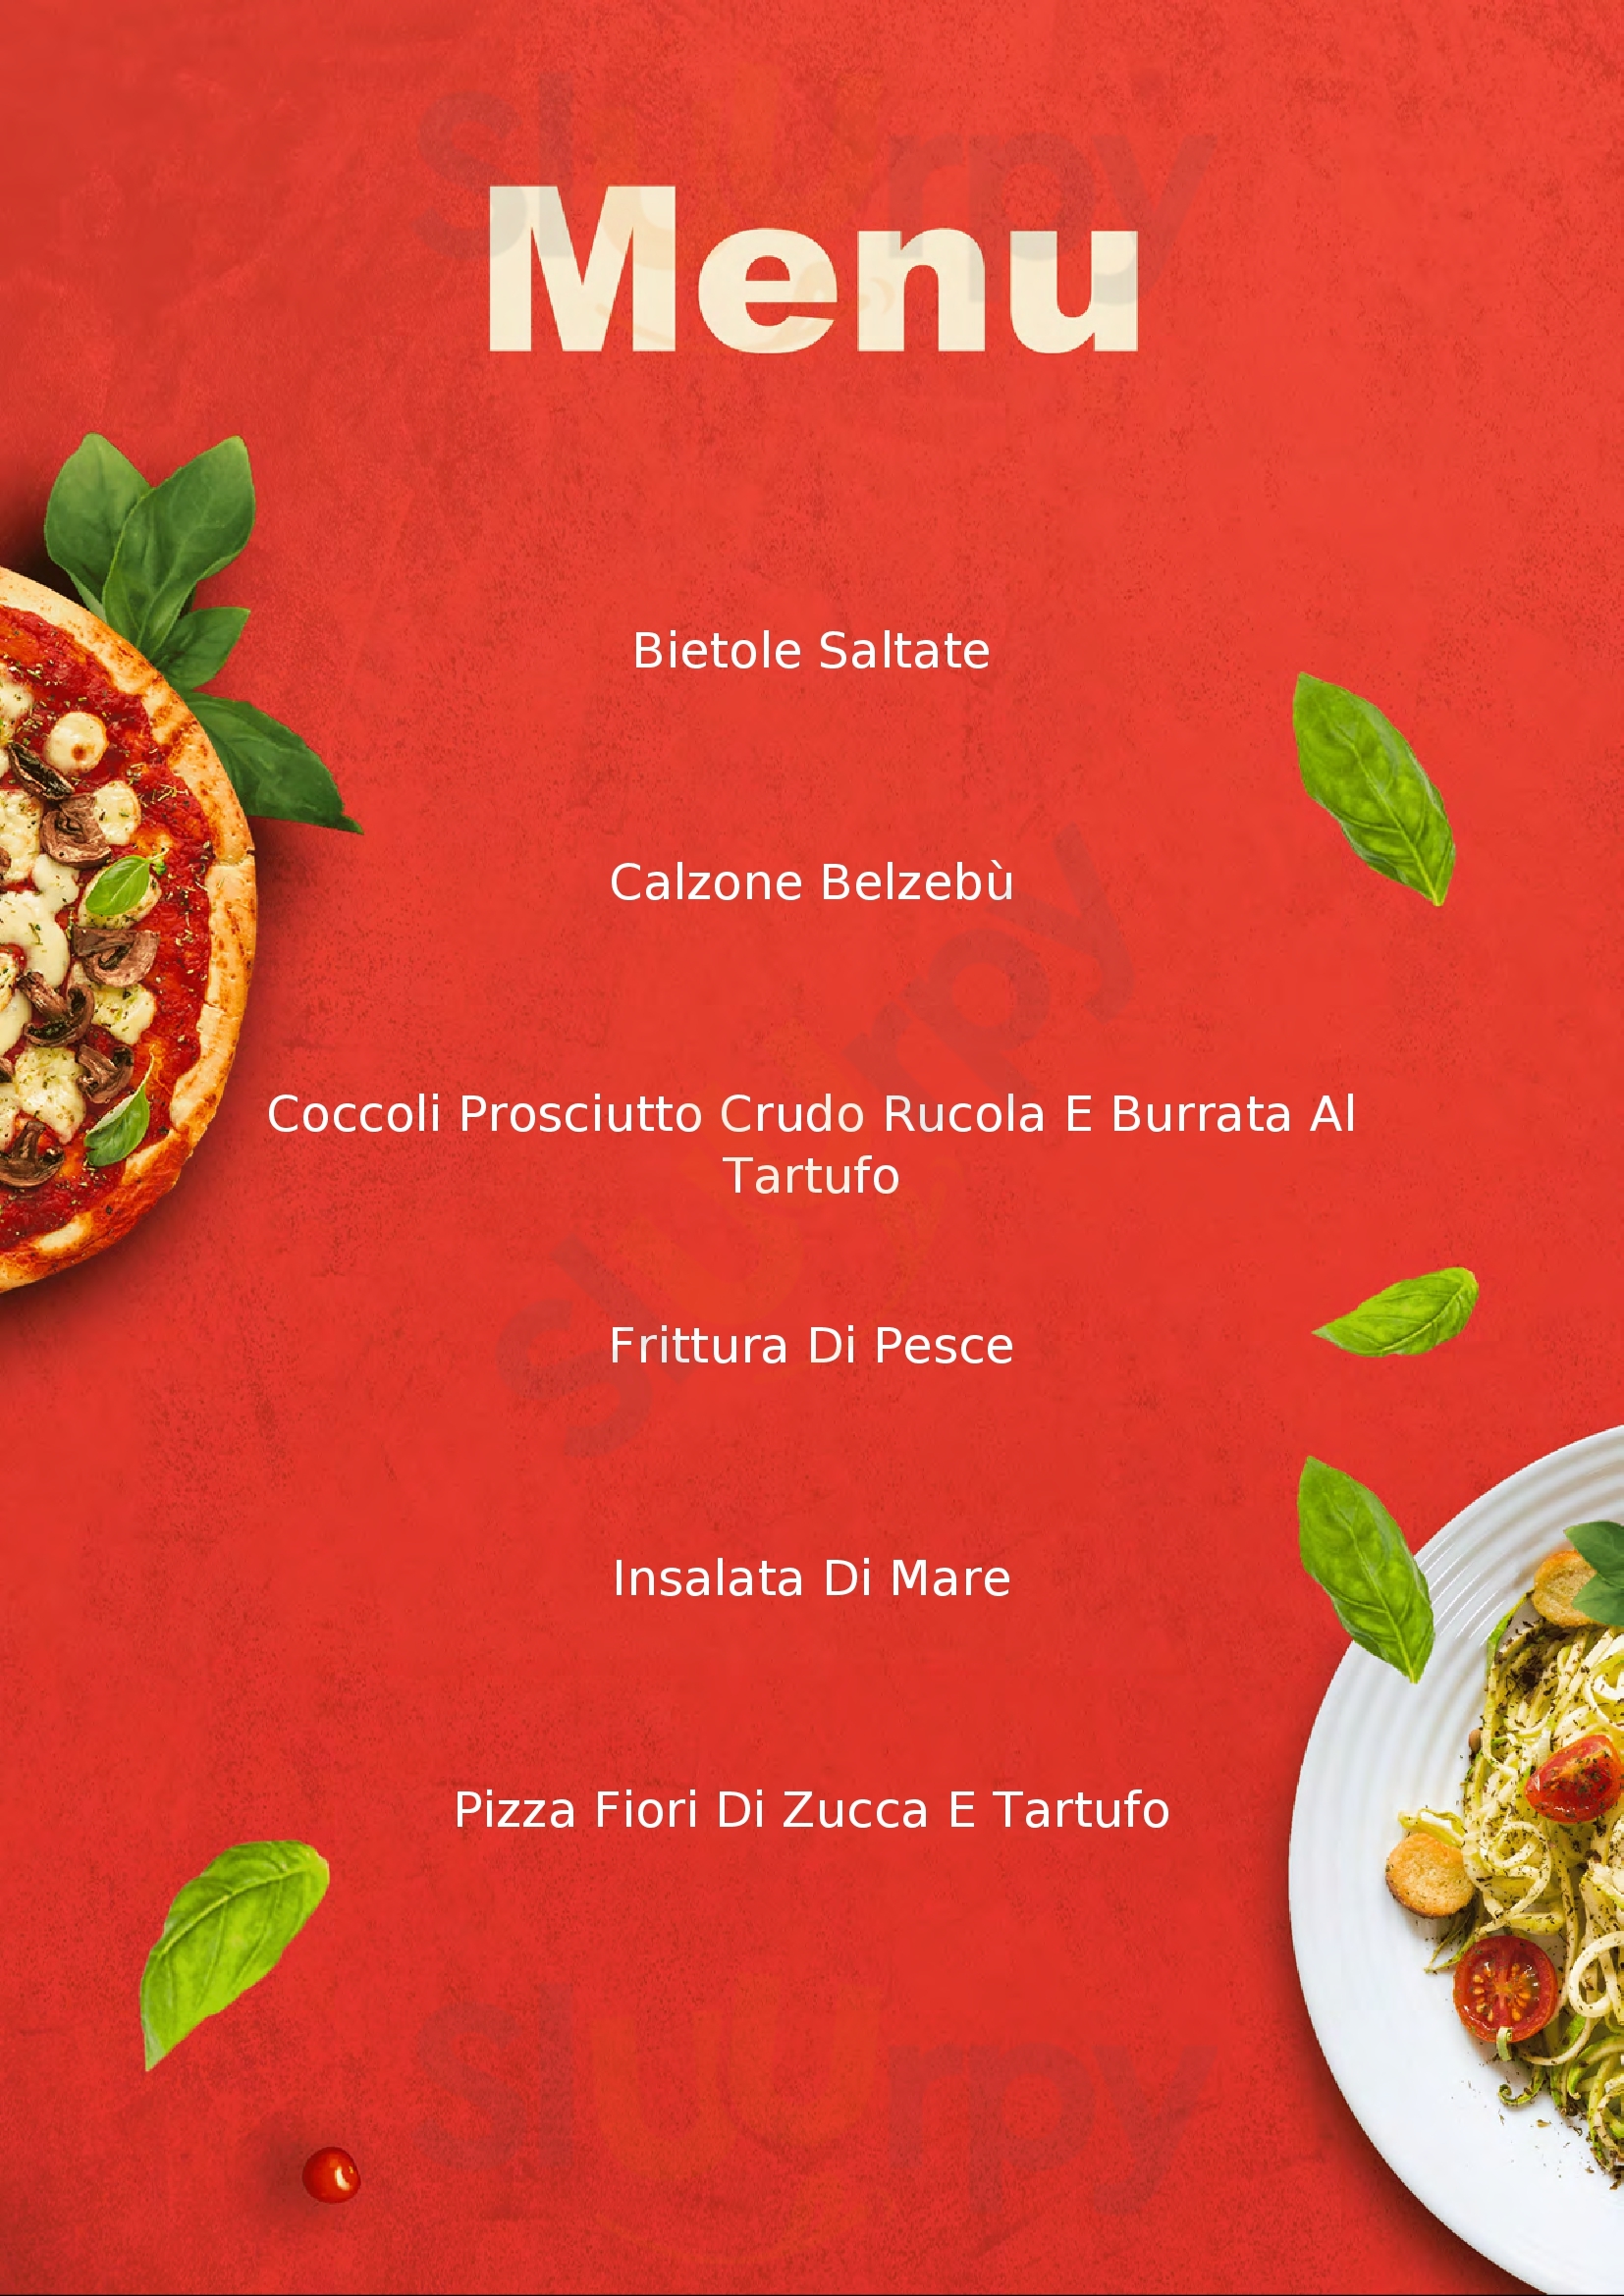 Verderame Ristorante Pizzeria Bar e Gluten Free Sesto Fiorentino menù 1 pagina